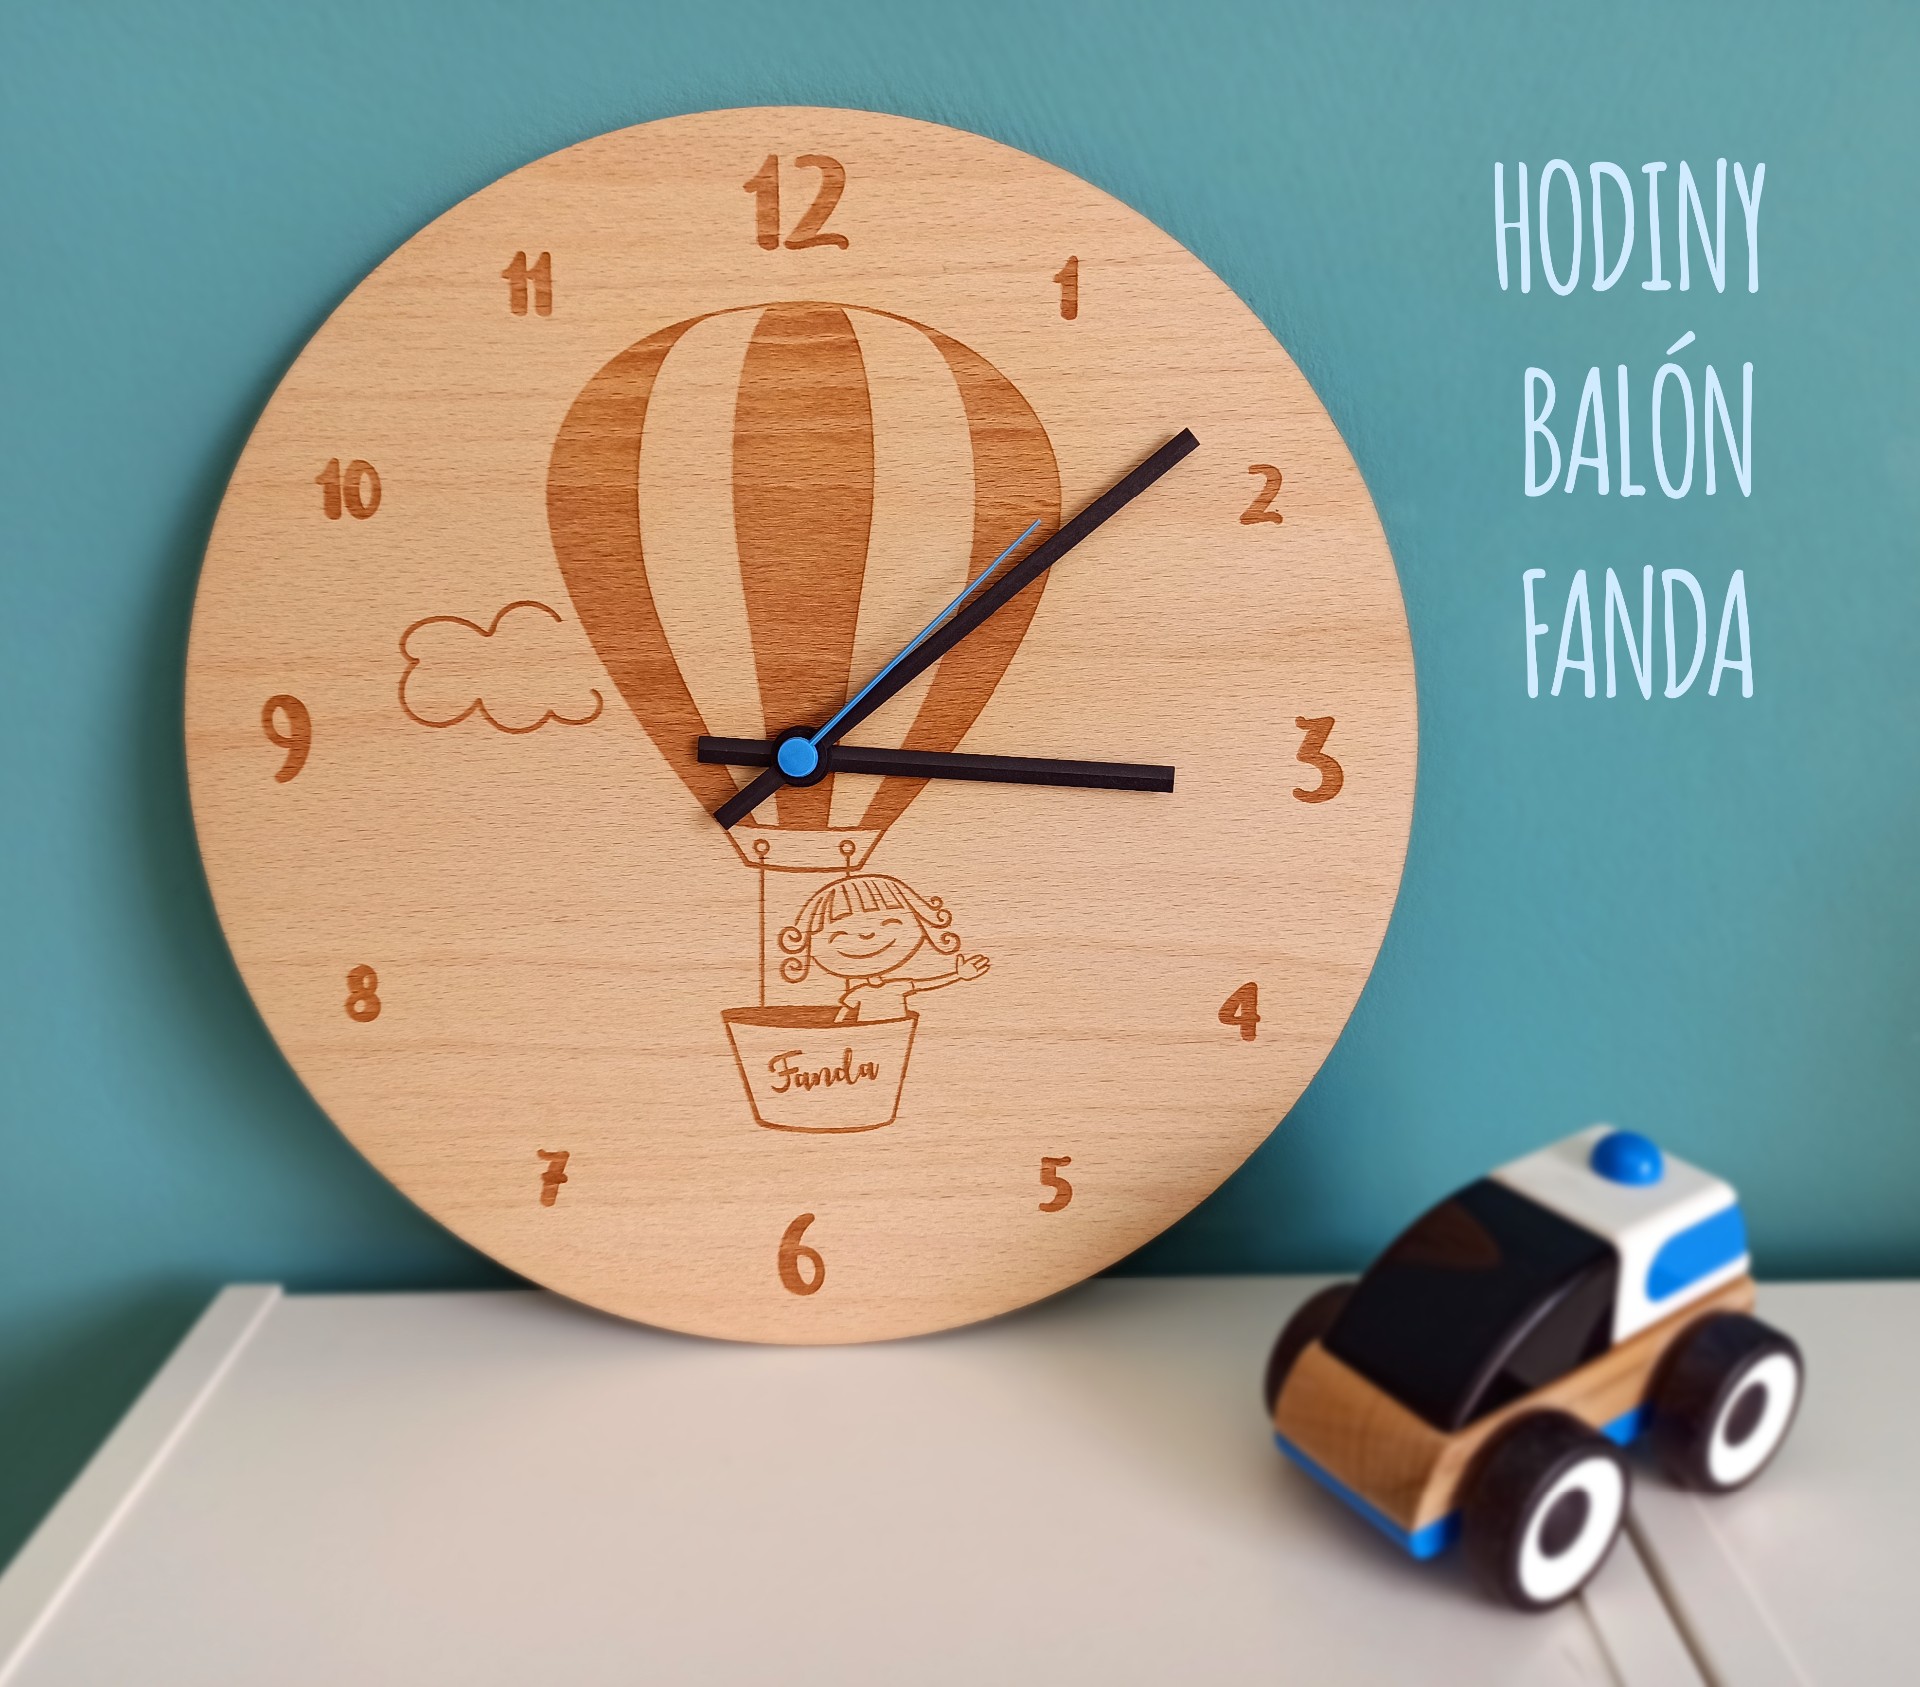 hodiny balon Fanda popis